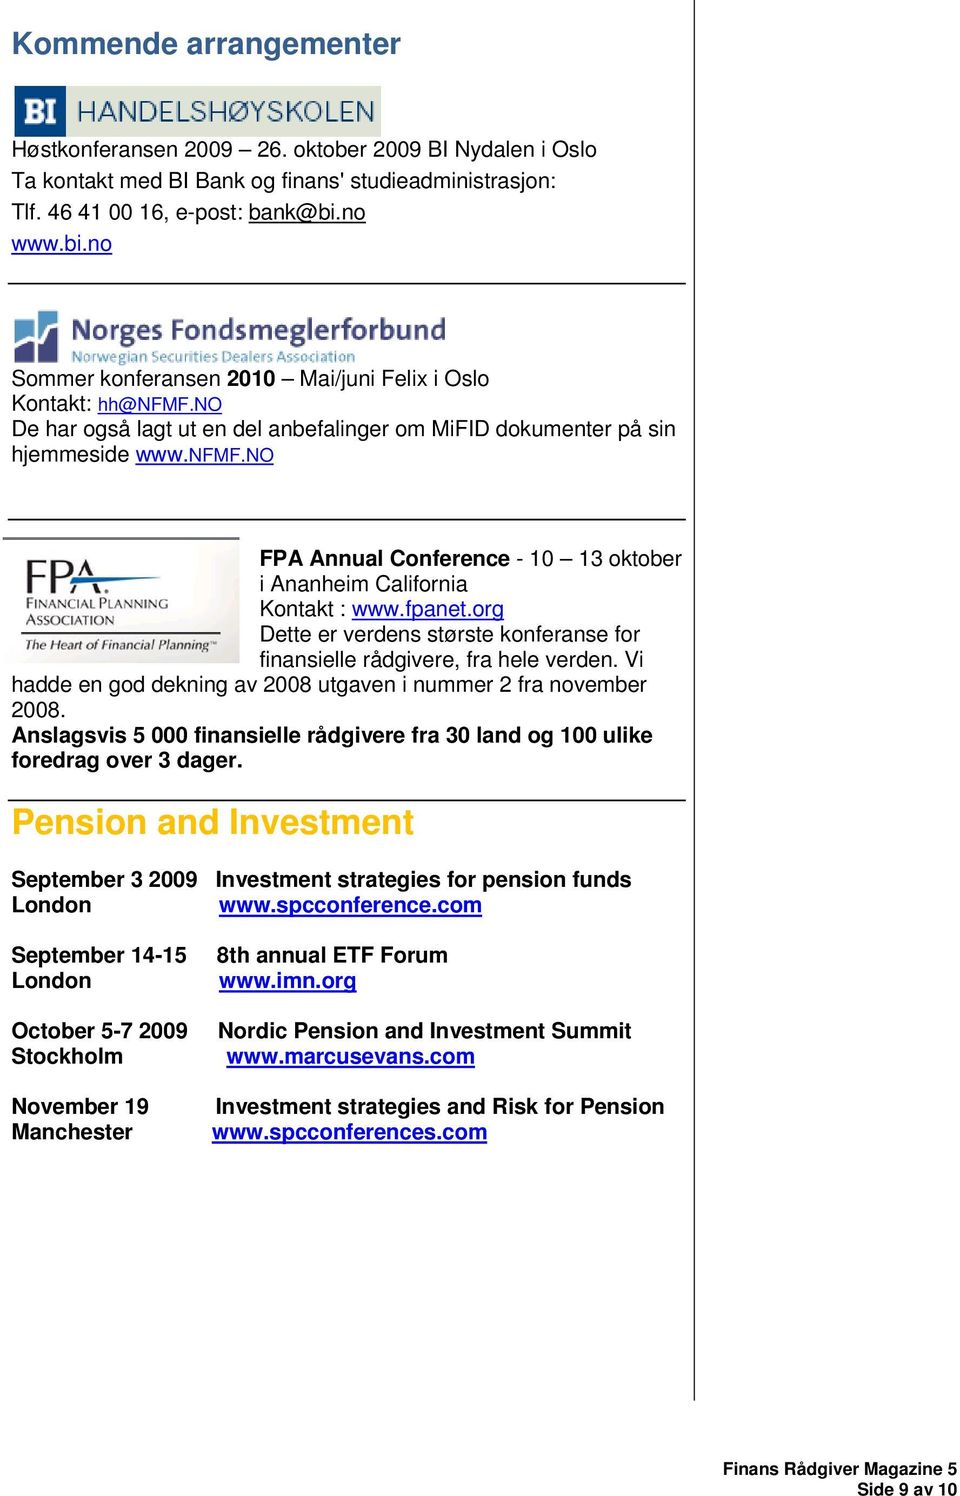 fpanet.org Dette er verdens største konferanse for finansielle rådgivere, fra hele verden. Vi hadde en god dekning av 2008 utgaven i nummer 2 fra november 2008.